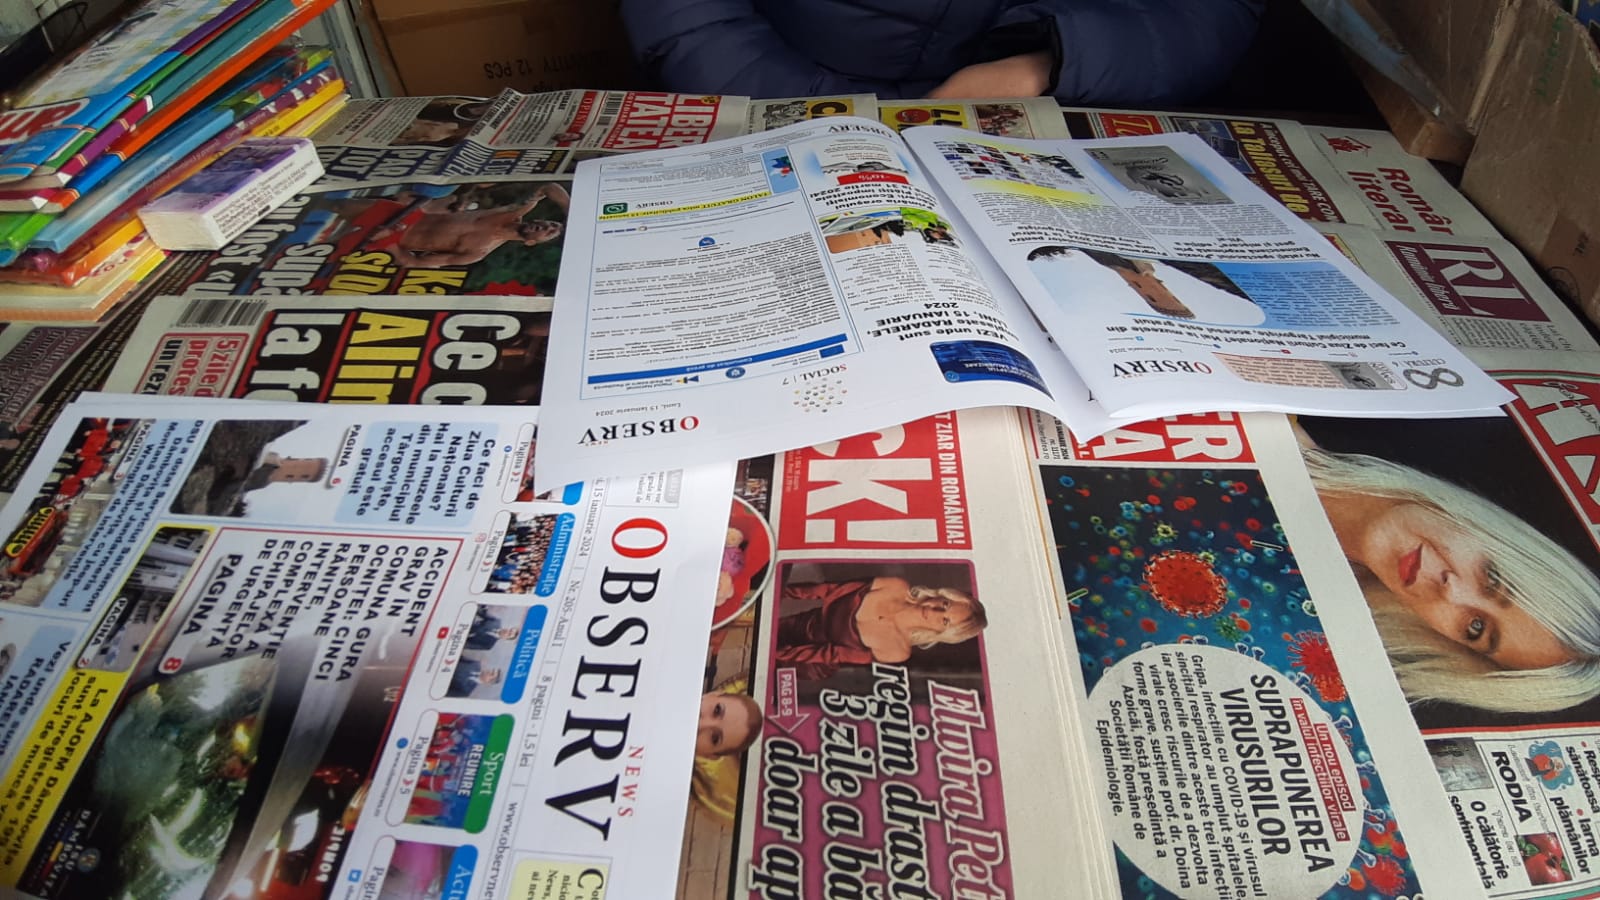 Descoperă Ziarul "Observ News" în chioșcurile tale locale din Târgoviște, Fieni, Găești și Titu